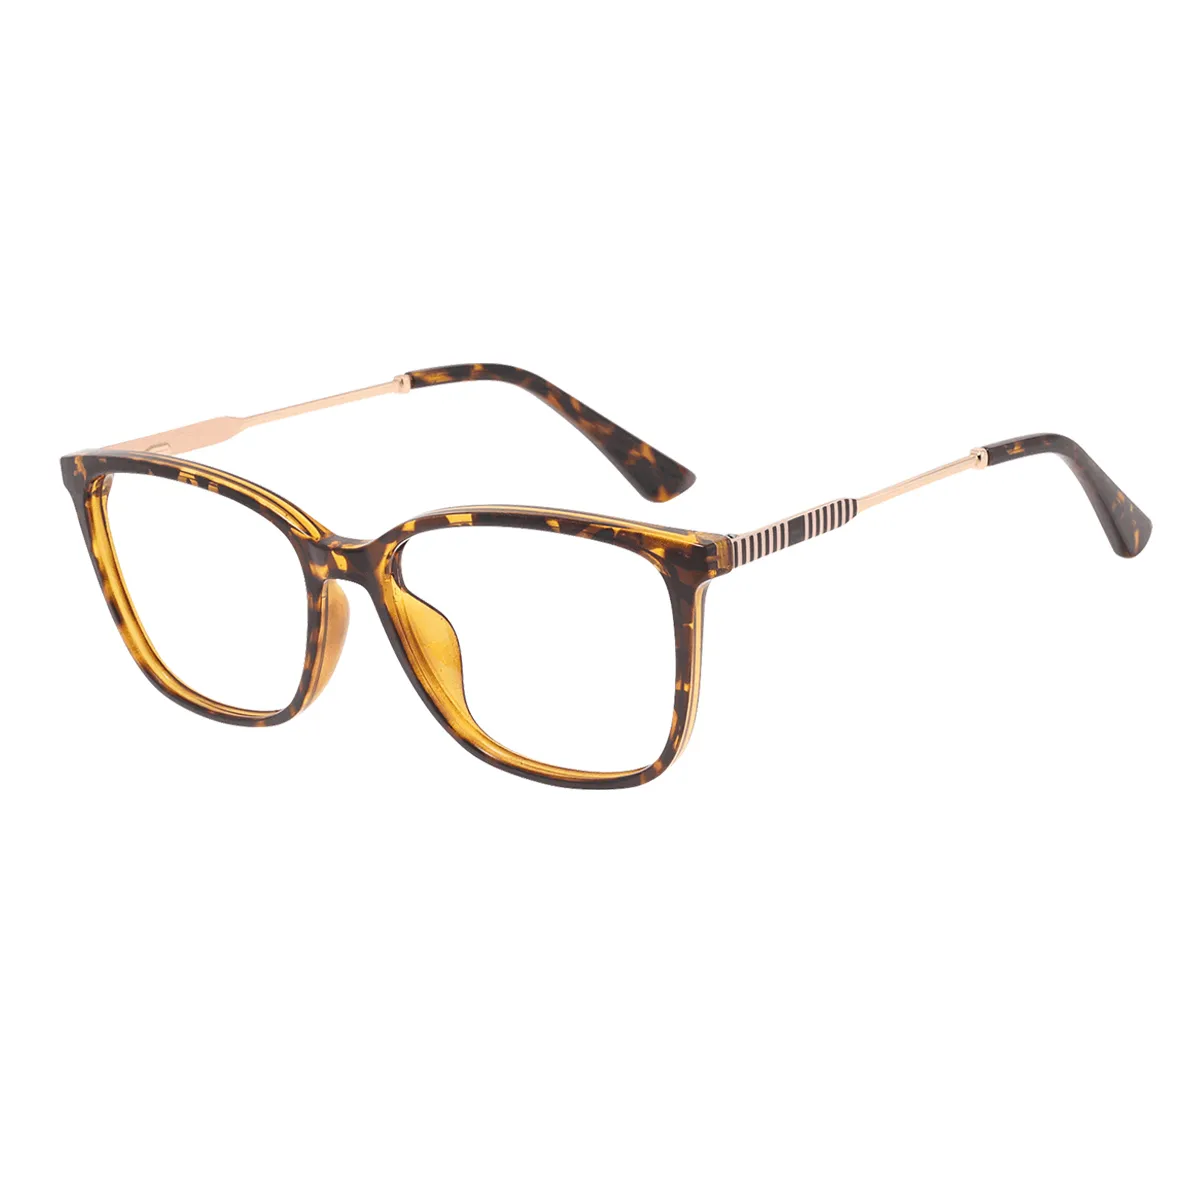 Huber - Square Tortoiseshell Glasses for Men & Women - EFE